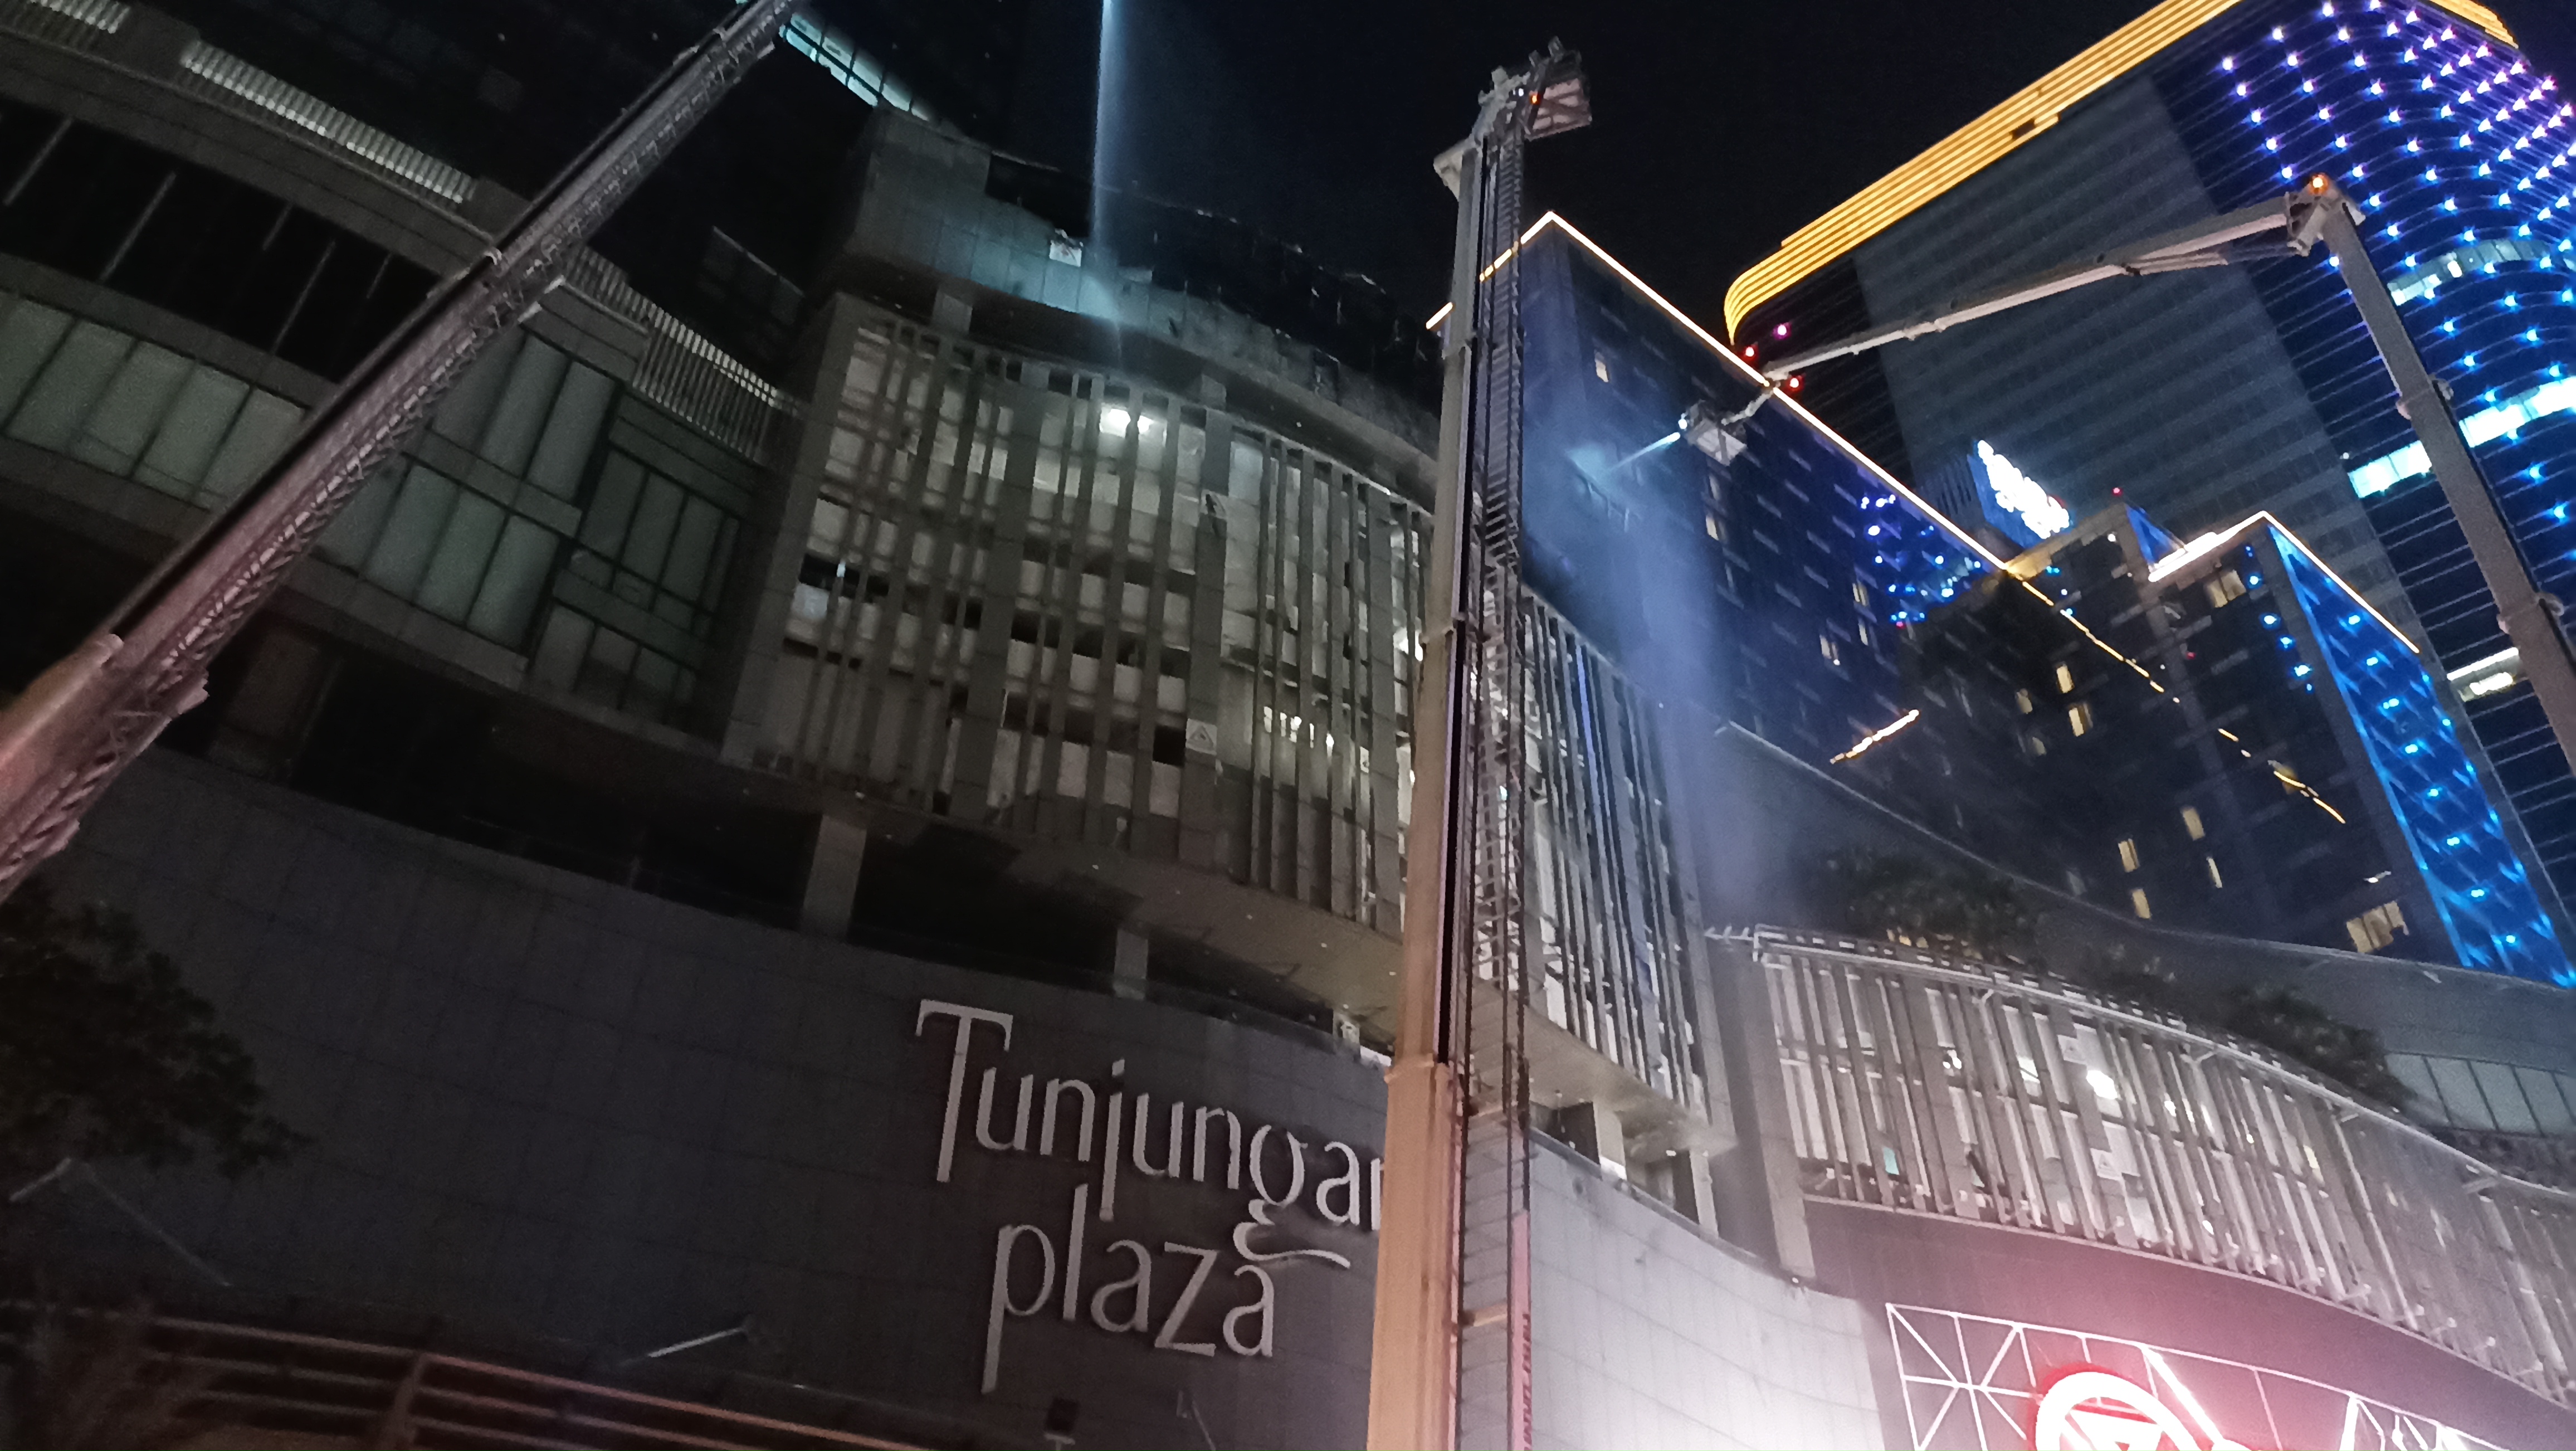 Kebakaran Mal Tunjungan Plaza, Pengelola Duga Api Berasal dari Lantai 10